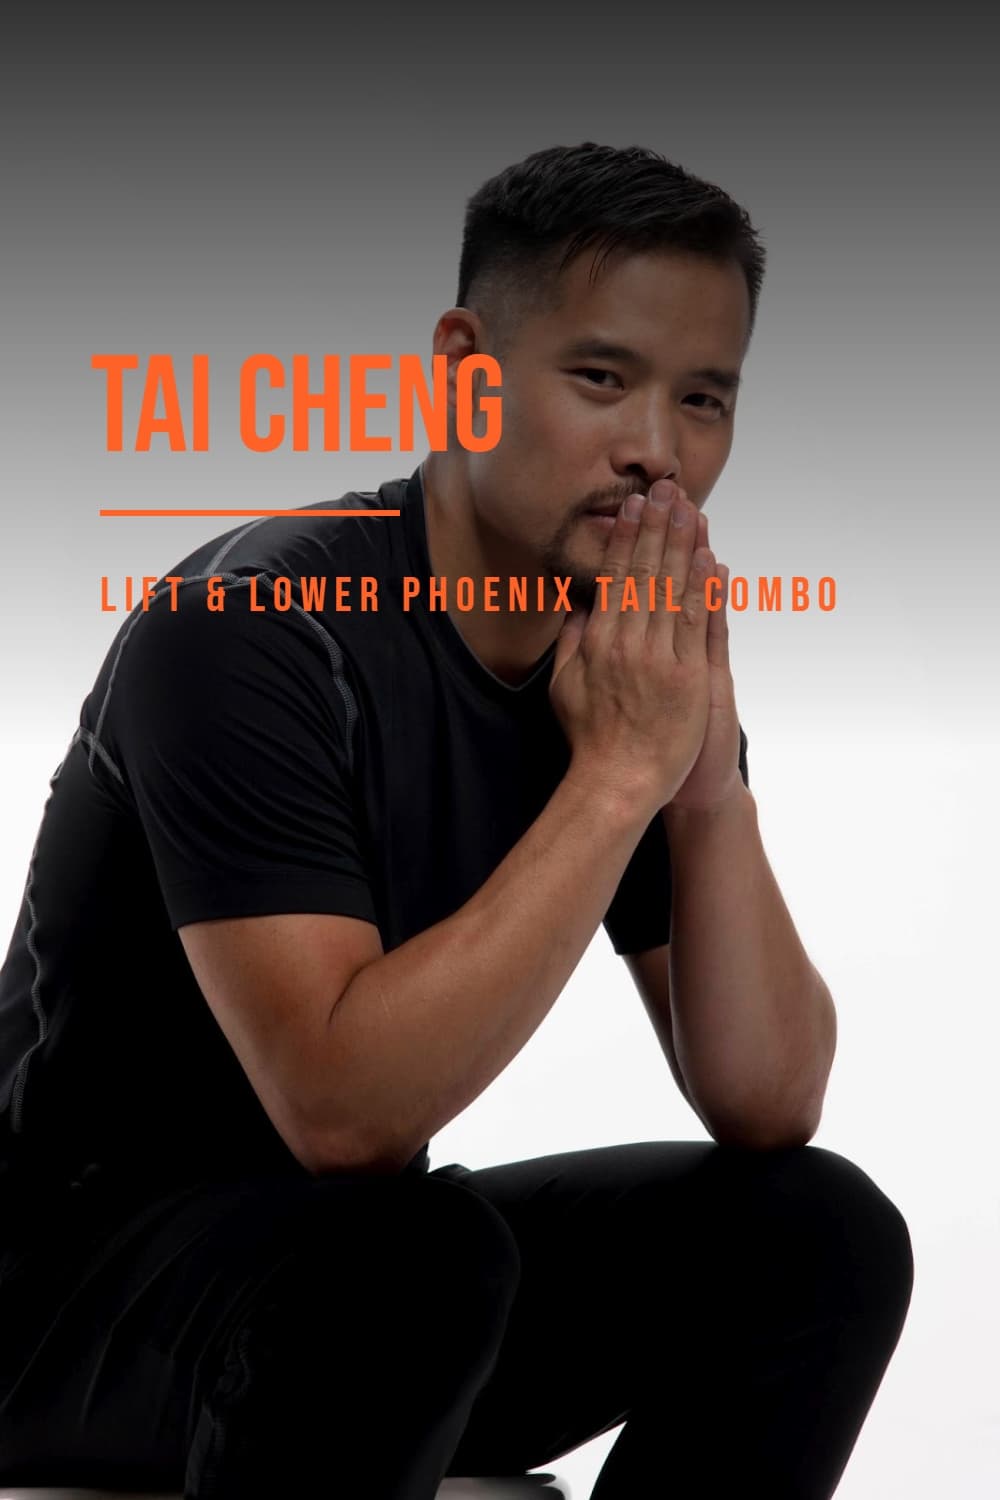 Tai Cheng - Lift & Lower Phoenix Tail Combo